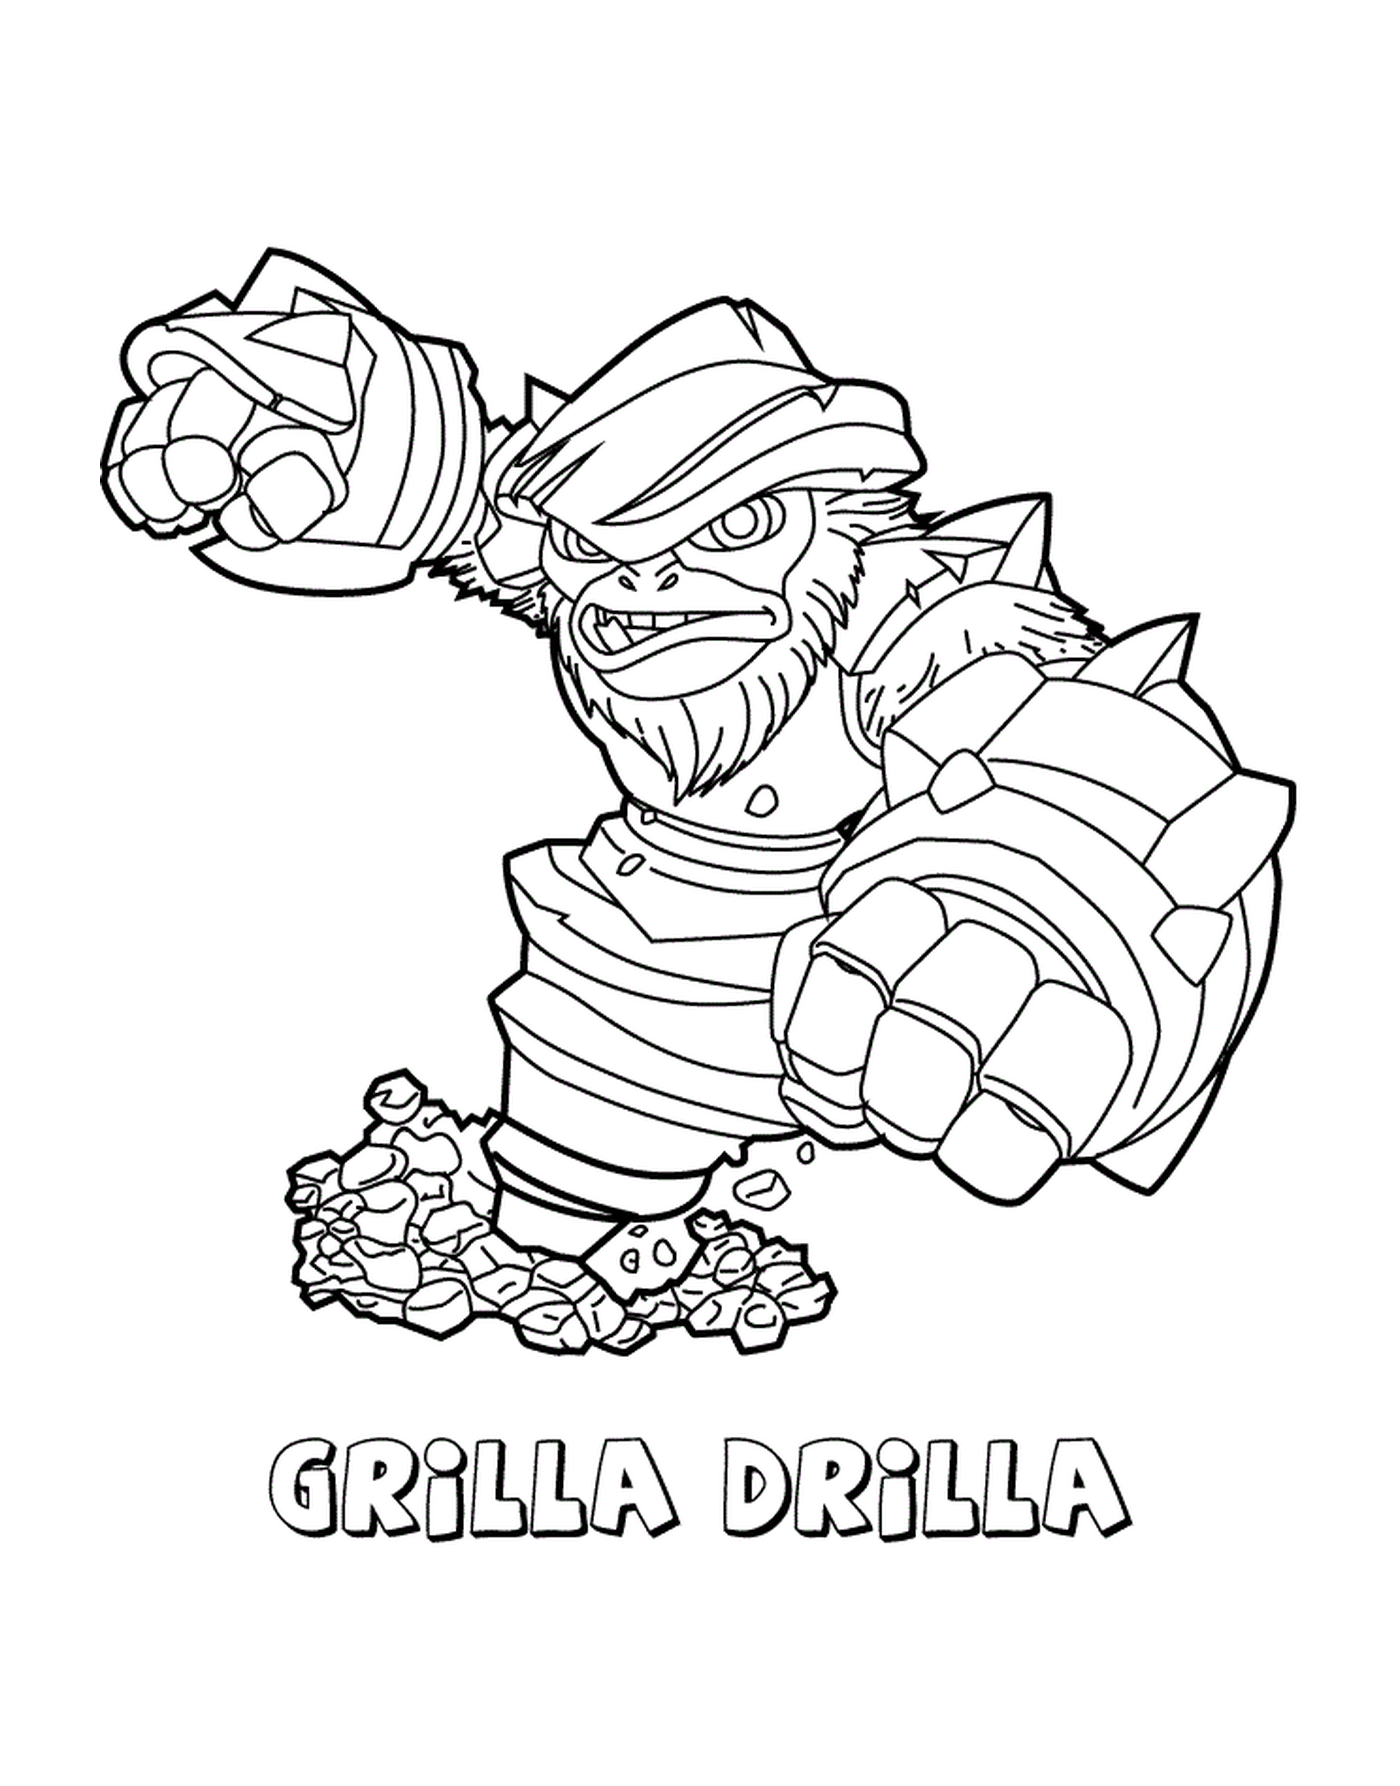  强大的格里拉·德瑞拉(Grilla Driilla) 